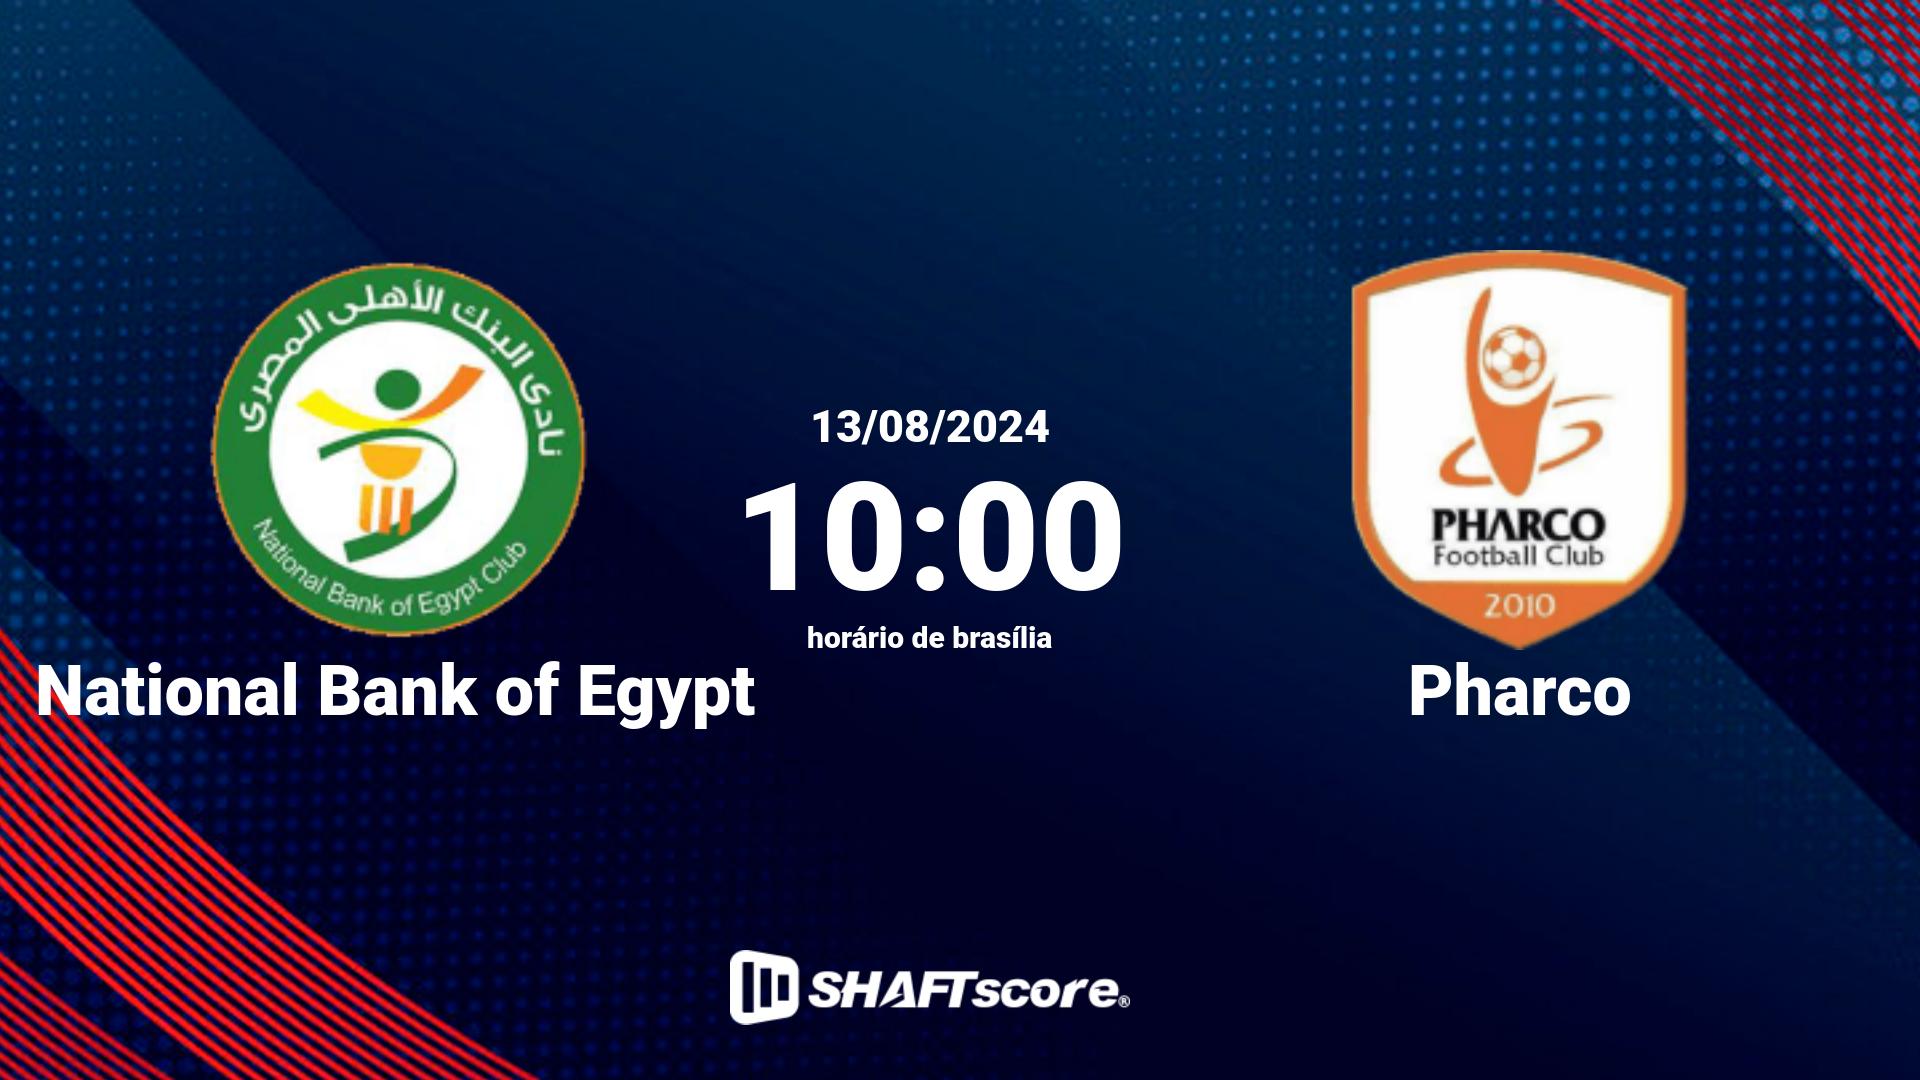 Estatísticas do jogo National Bank of Egypt vs Pharco 13.08 10:00